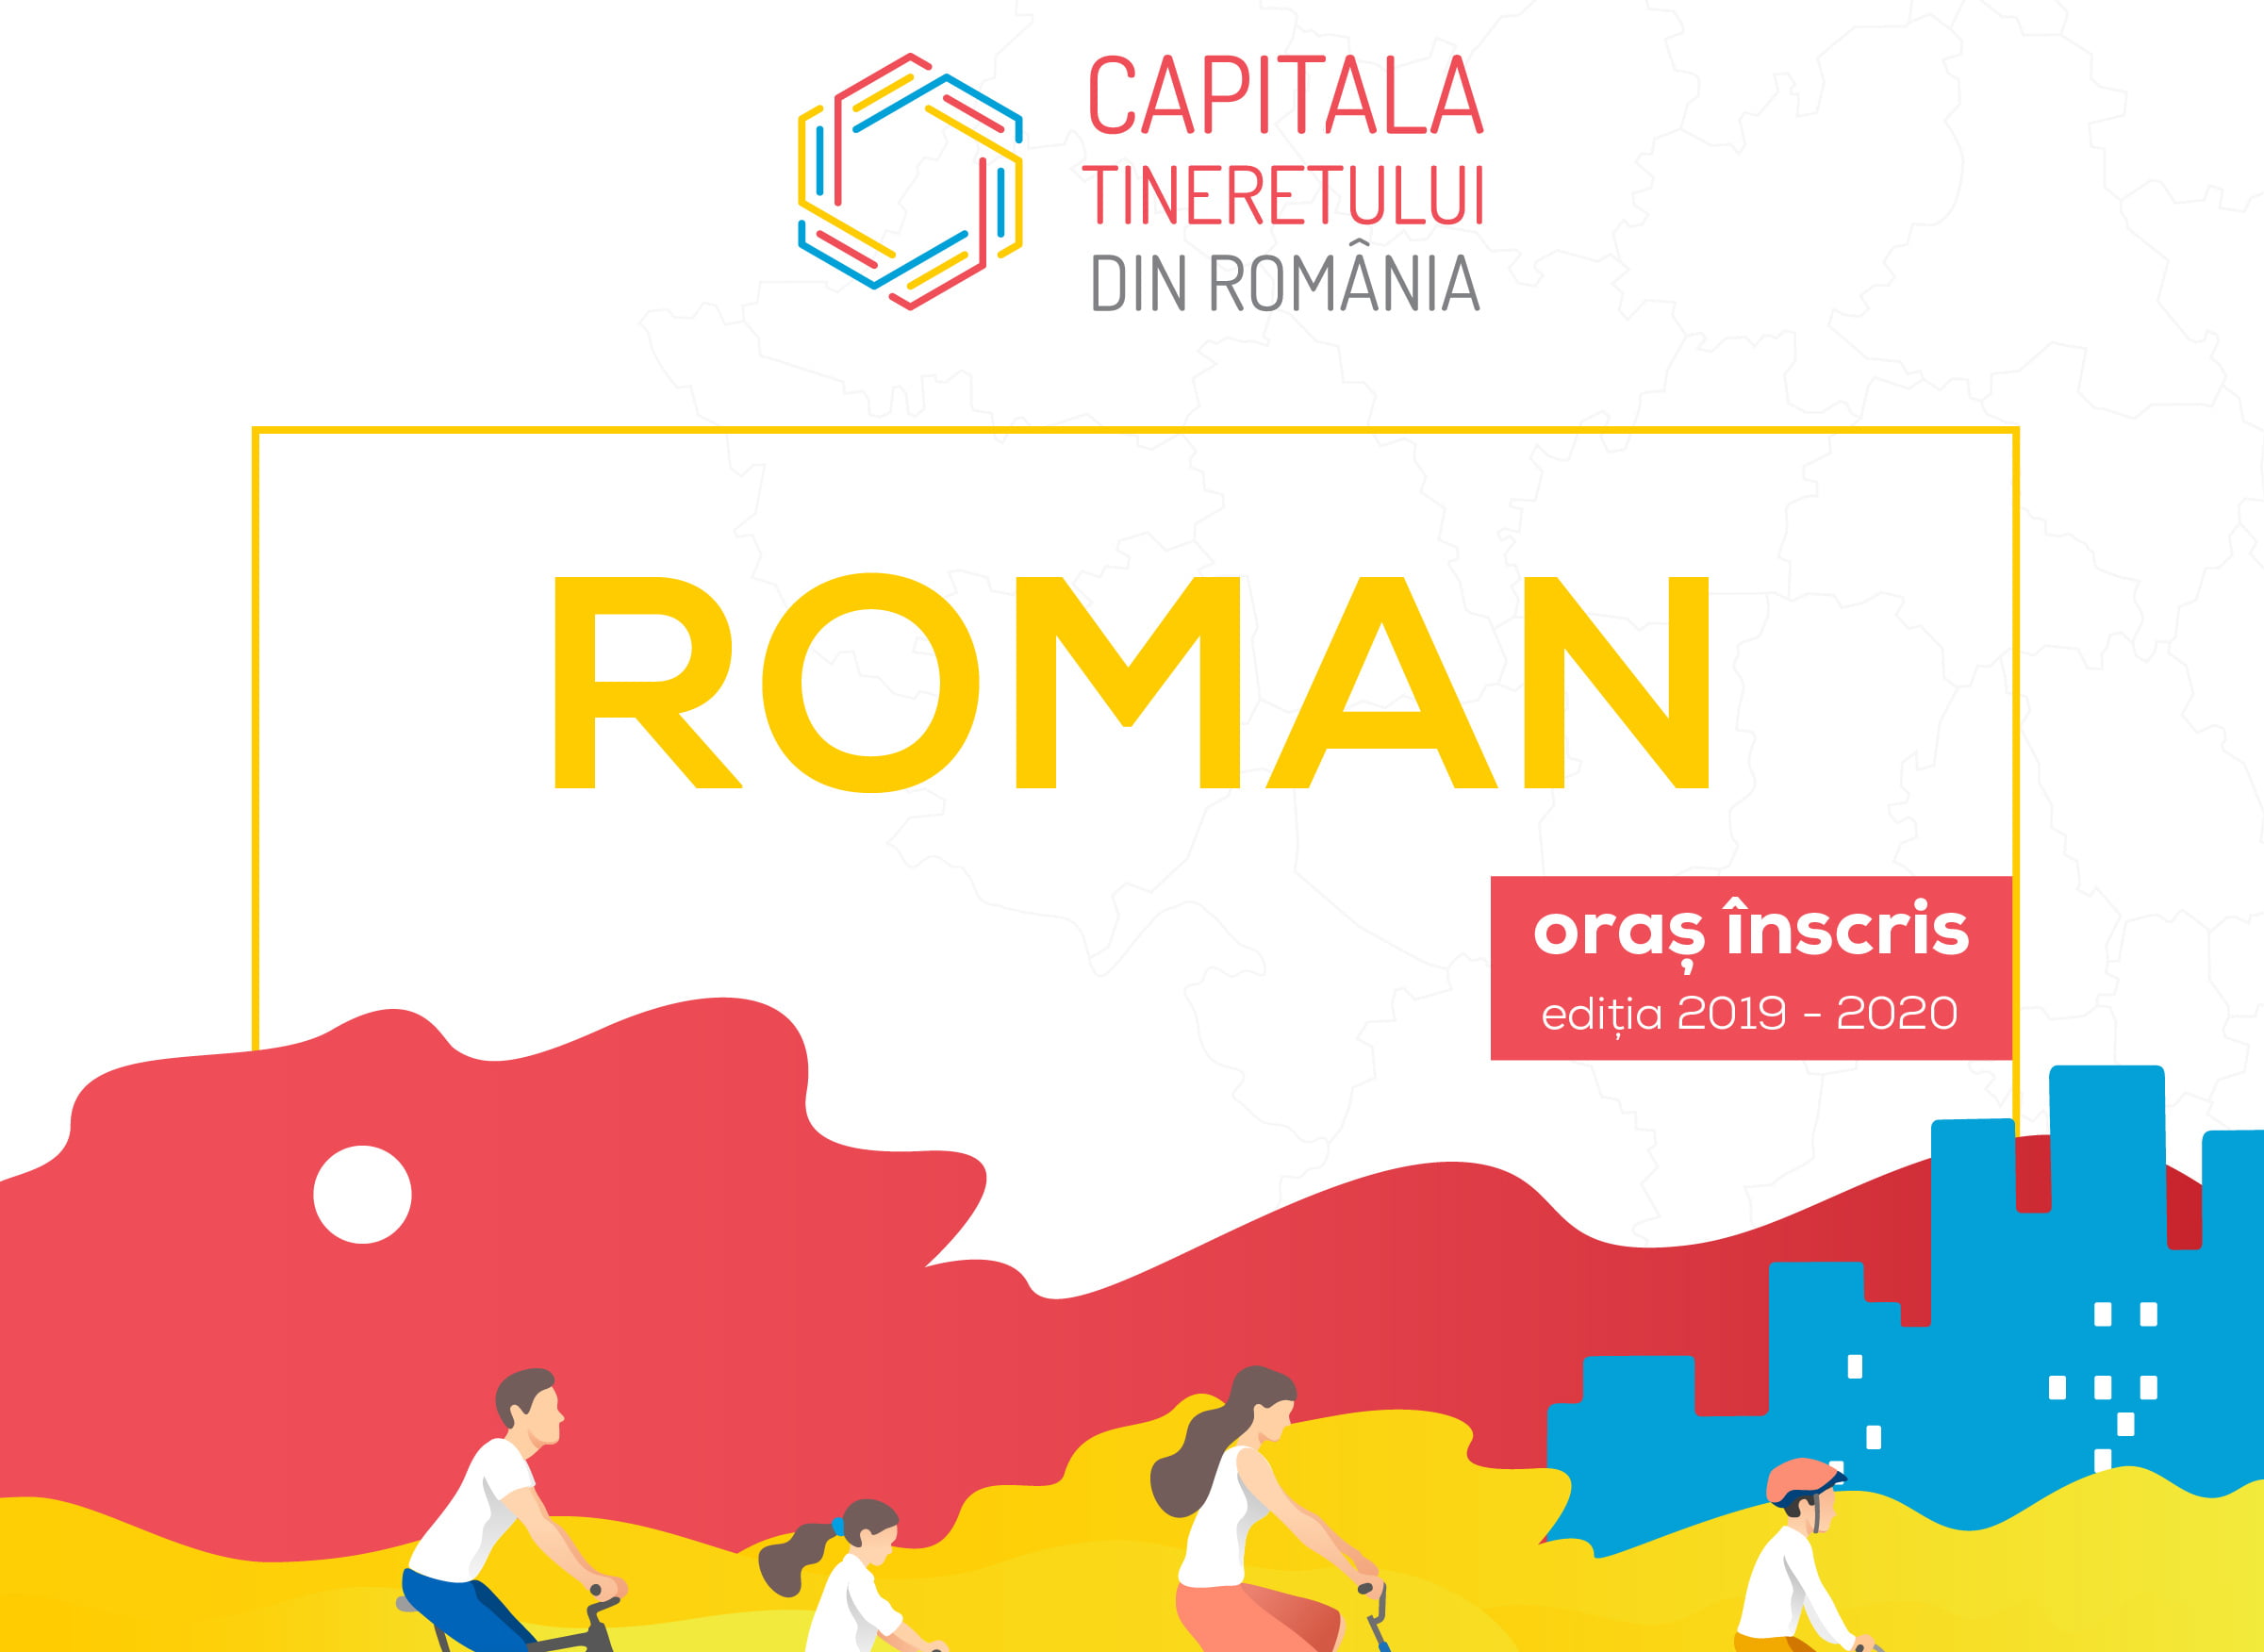 Sondaj despre „punctele tari” ale Romanului pentru a câștiga titlul de Capitala Tineretului